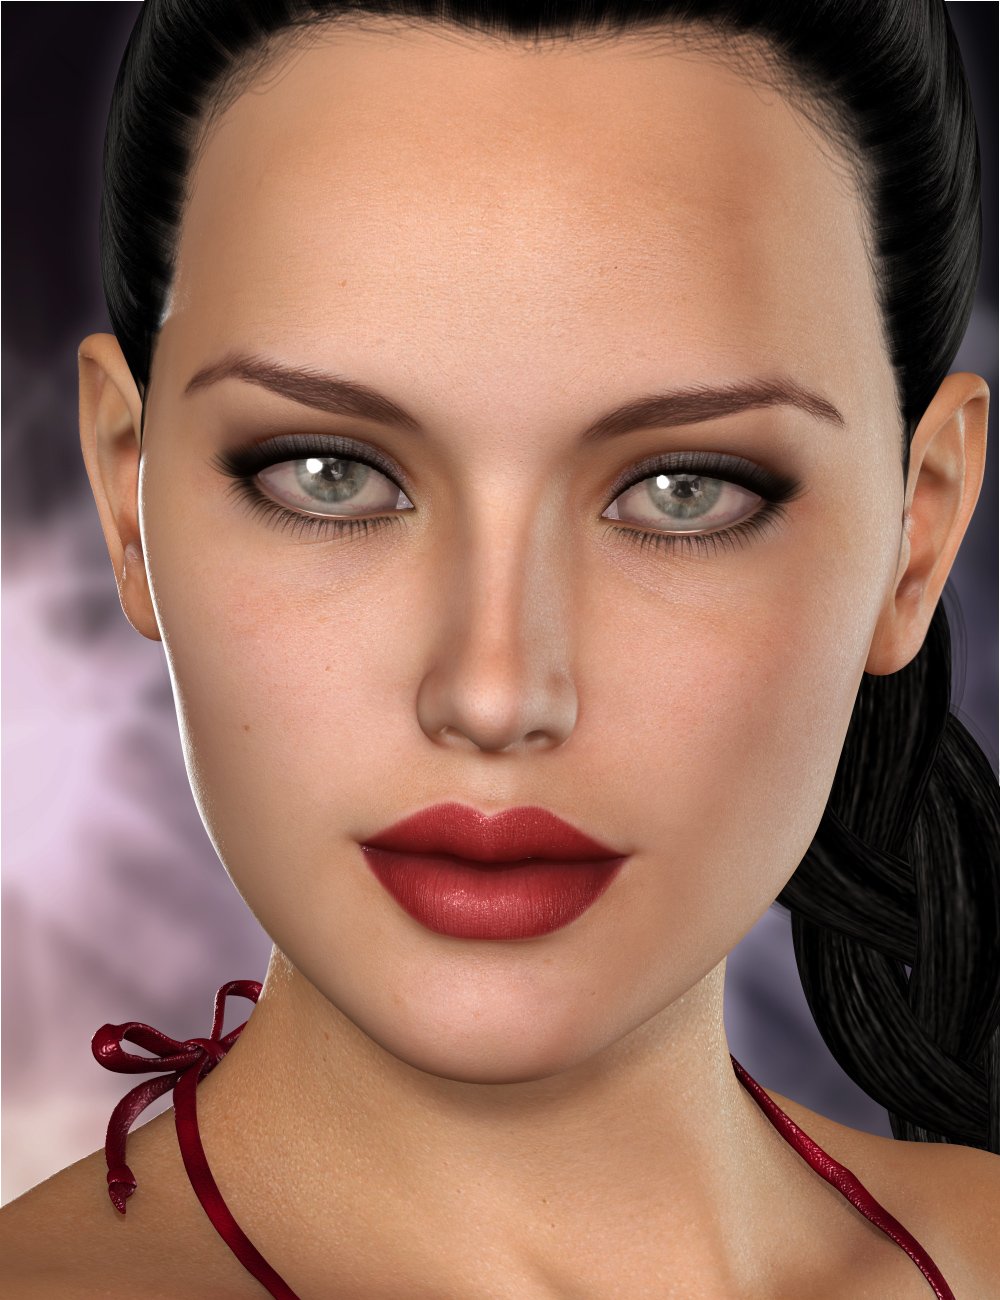 Letizia for Lilith 6 by: Raiya, 3D Models by Daz 3D